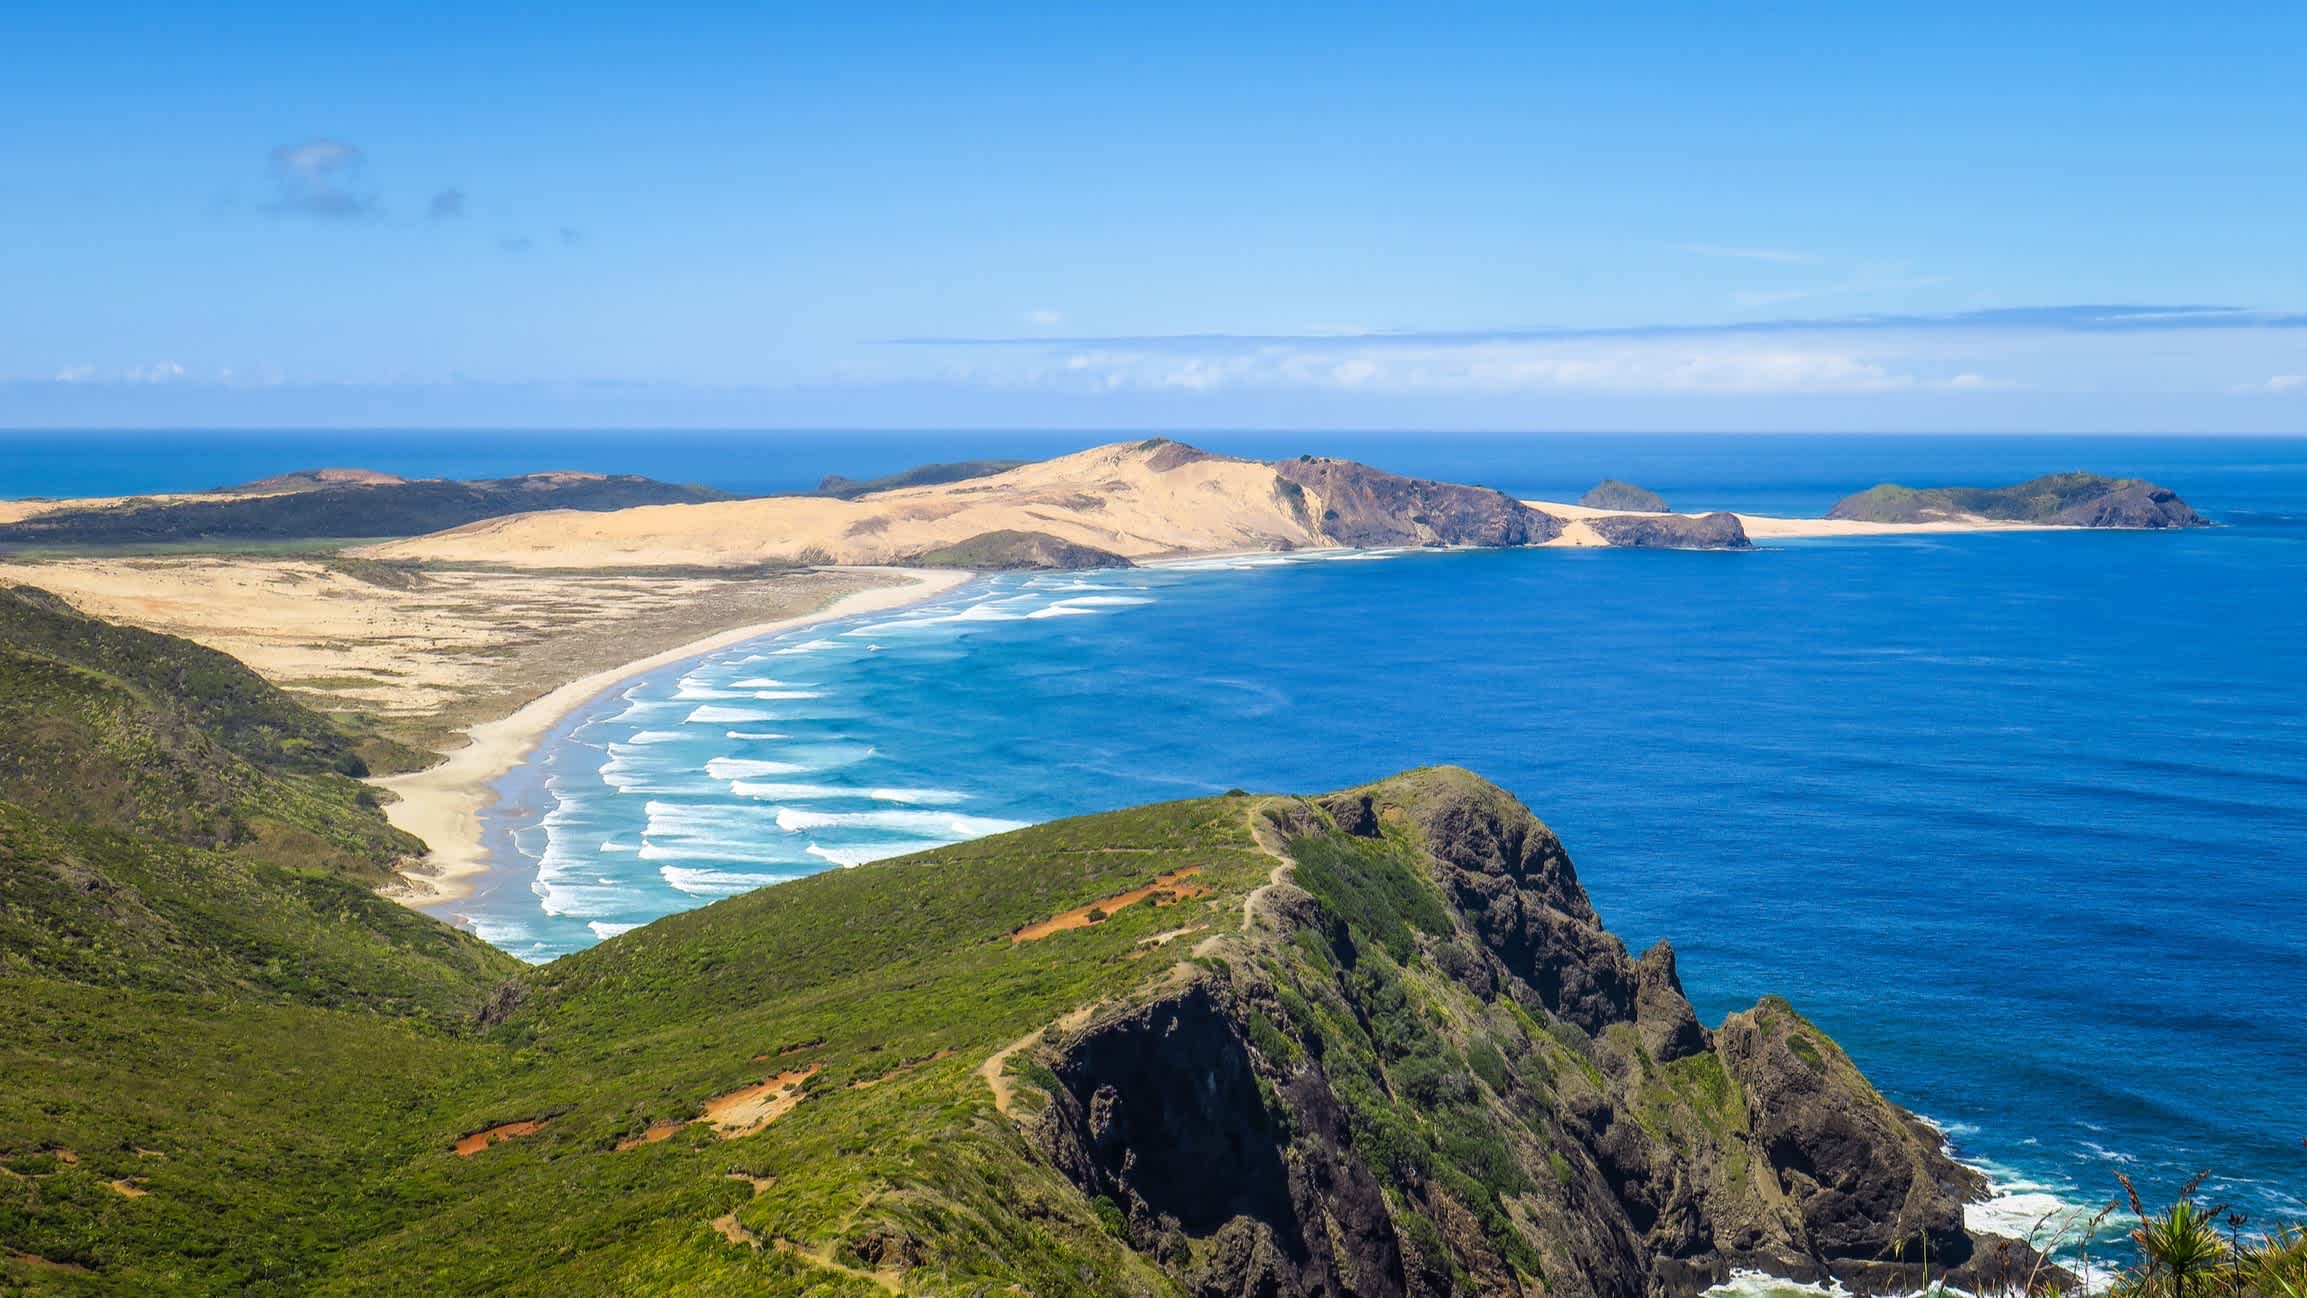 Der Strand Ninety Mile Beach, Cape Reinga, Neuseeland mit Blick von oben über die Bucht und auf das blaue Meer und die umliegenden Hügel.
